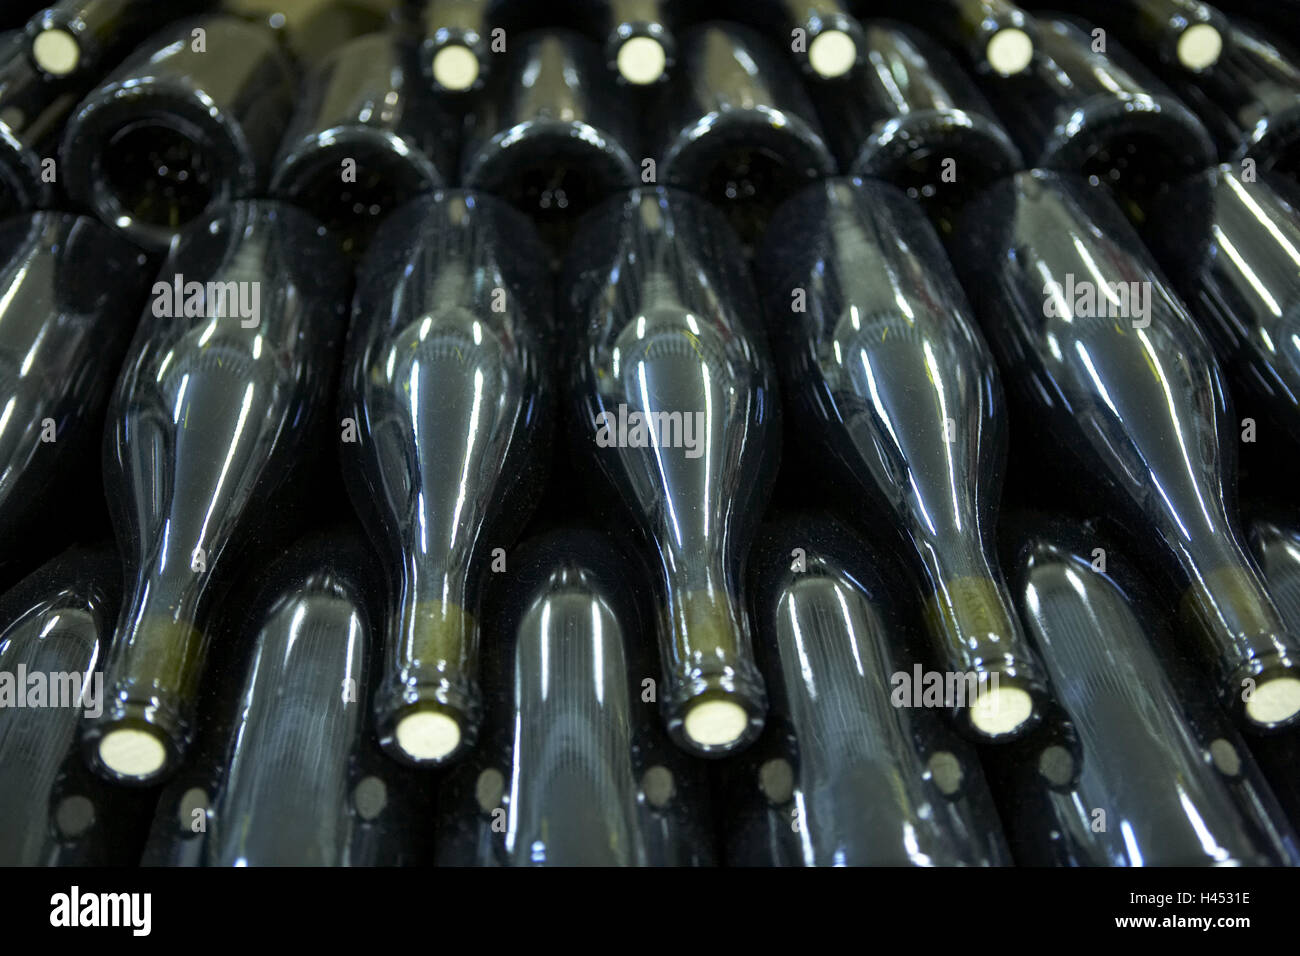 Bottiglie, dettaglio, cantina, wine-premere house, storage, magazzino di vino, vino storage, bottiglie di vino le bottiglie di vetro, vino, verde, di serie Foto Stock